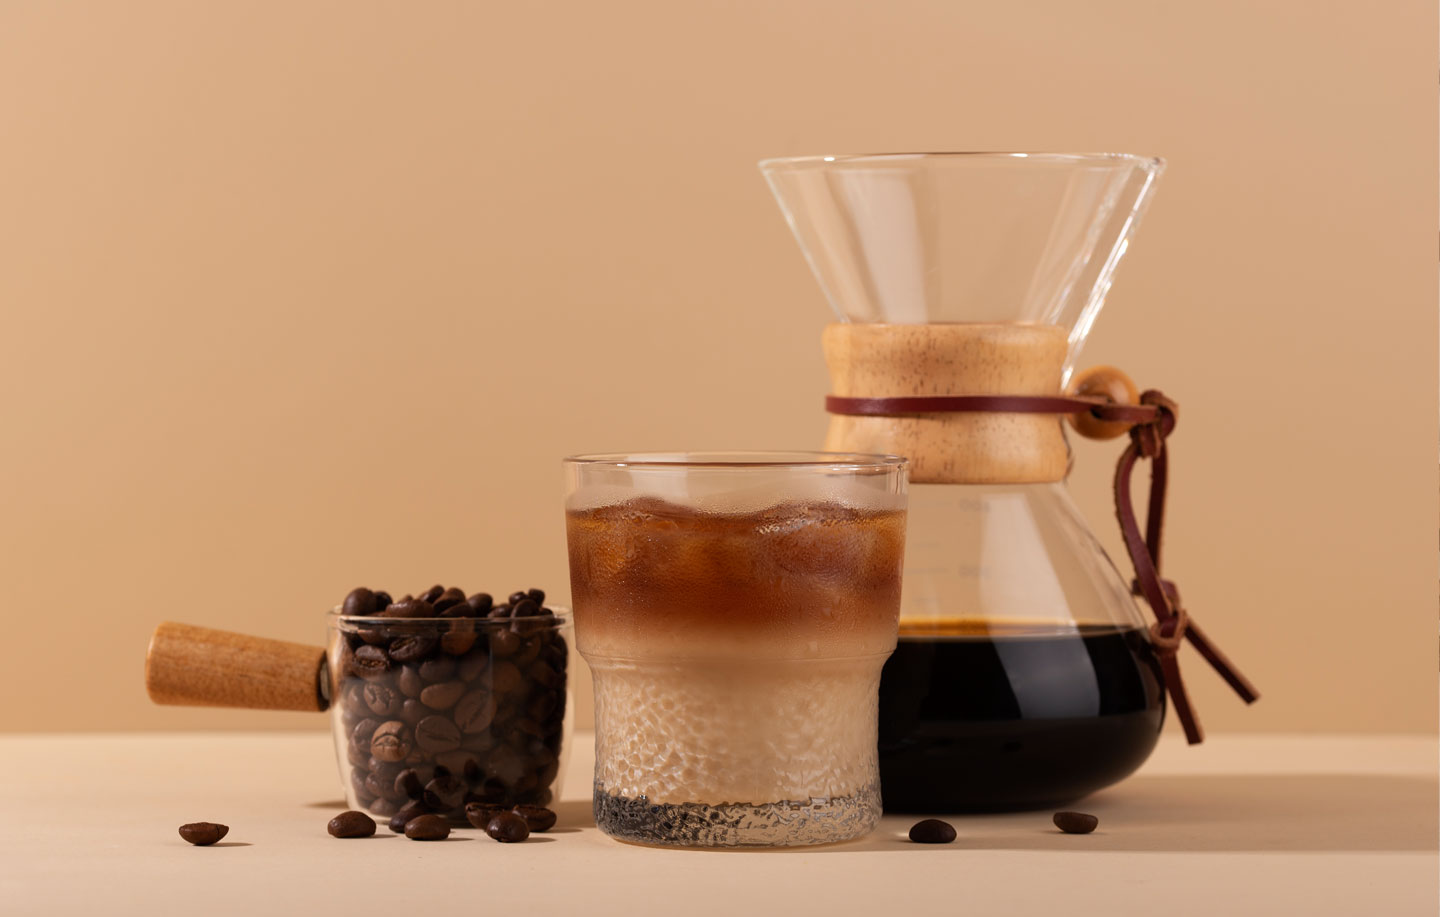 Cold Brew Coffee: scopriamo insieme a Jonathan i segreti di questa deliziosa bevanda.